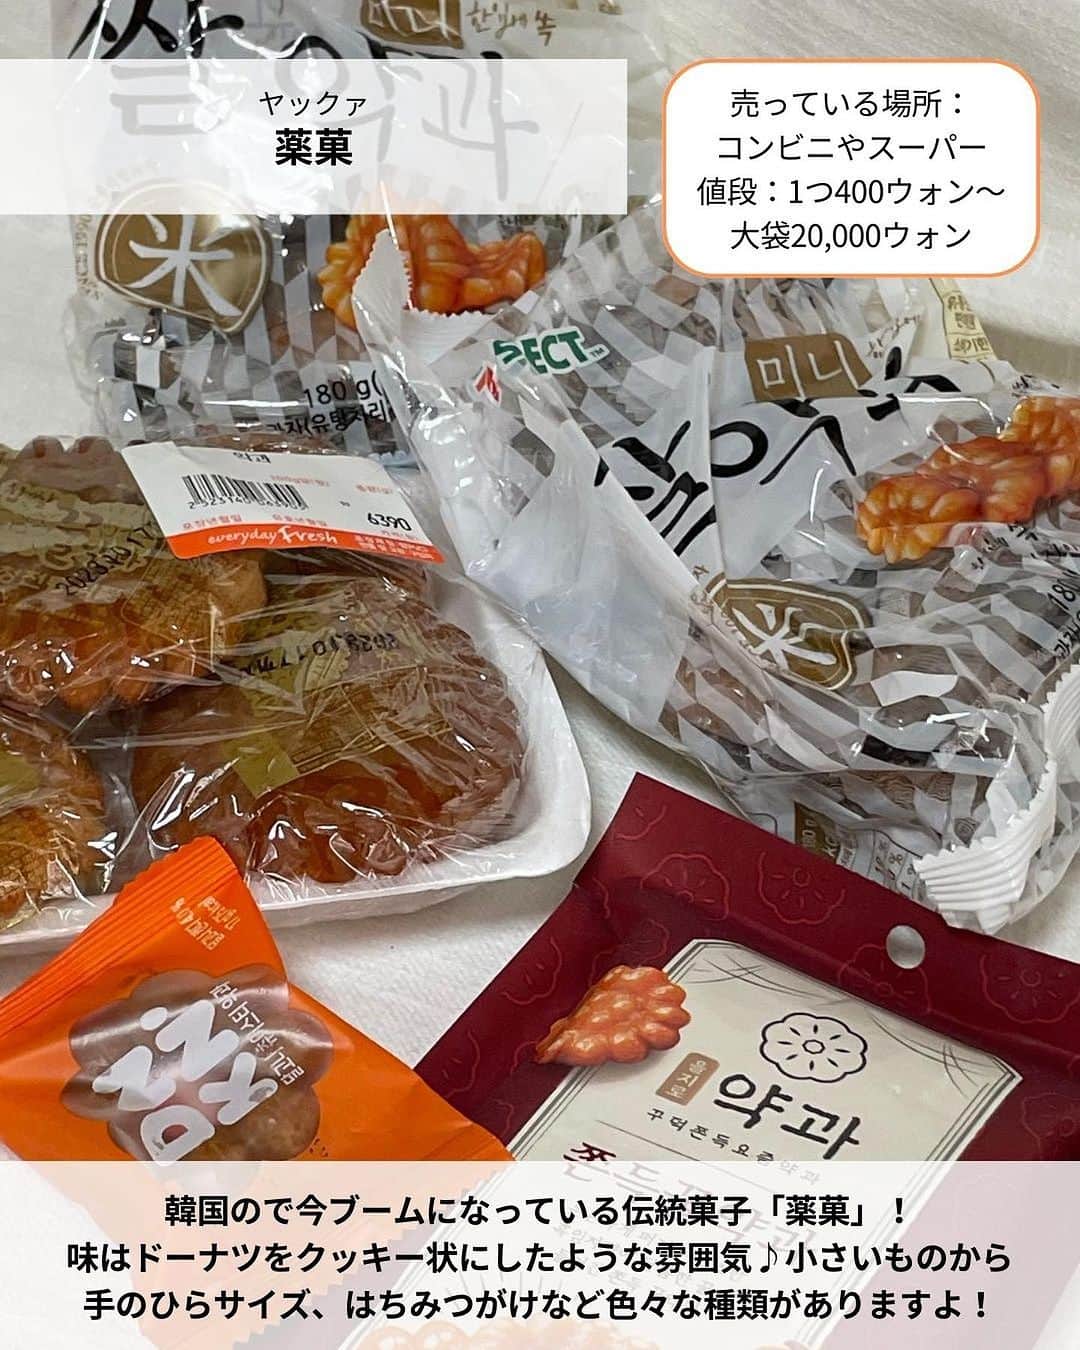 旅工房公式さんのインスタグラム写真 - (旅工房公式Instagram)「※all the ugly cookieの値段が画像内間違っておりました。正しくは1つ5,900ウォンです。  ＼ばらまき土産から最新コスメまで✨／  #韓国旅行 #韓国土産    こんにちは！☺  今回は、実際に韓国旅行に行ってきたスタッフおすすめ！  韓国の最新おすすめ土産を特集しました✨    お菓子や、女性に人気のコスメなど、お土産にしたら喜ばれること間違いなし🎶  次の旅行の参考にぜひしてみてください＼(^o^)／ 💚    ━━━━━━━━━━━━━━━    📍薬菓   韓国ので今ブームになっている伝統菓子「薬菓」！  味はドーナツをクッキー状にしたような雰囲気♪  小さいものから手のひらサイズ、薬菓クッキーなども色々な種類がありますよ！    📍 all the ugly cookieの薬菓クッキー  また、韓国では薬菓をクッキーの上に乗せた薬菓クッキーも流行中。  all the ugly cookieというカフェでは、看板メニューとして売られて  います。賞味期限も購入から3日間あるので、お土産にもできますよ♪      📍viyottのヨーグルト  韓国の大人気シリアルヨーグルト！  韓国旅行の朝食でこれを食べるという方も多いはず◎  定番はオレンジ色のチョコリング！サクサク食感のチョコシリアルとヨーグルトの相性が最高です♪    📍Miz Black  前ページで紹介した「viyott」のチョコパフに似ていると話題！  ヨーグルトと混ぜるだけでviyottを再現できます◎  スーツケースにヨーグルトを入れるのが心配…という方にはこちらがおすすめ！    📍メディヒールのパック   韓国発のコスメブランド「メディヒール」。  バリエーション豊富でうるおいたっぷりのパックはばらまき土産に最適です。  ディスカウントショップだと日本の半額以下で買うことができますよ！    📍JOJOBAリップエッセンス  韓国で大人気のリップエッセンス！  保湿力がかなり高く韓国の芸能人や美容家の方も愛用しているんだとか♪  プチプラなので友達へのお土産にもいいですね◎    📍ノスカナゲル  韓国で今話題になっている、ニキビ跡、傷跡に効果のあるクリーム！  虫刺されの跡など色素沈着した跡によく効くと話題！ サイズが2種類あるのでまずは小さいサイズから試すのも◎    📍ヘアクリップ  韓国ではヘアクリップで髪の毛をまとめるのが定番！  高速ターミナルや駅の地下など本当にいろいろな場所で購入できます。  デザインもたくさんあるので、ぜひお気に入りを見つけてみてください♪    この記事を読んで、ぜひ次回の海外旅行の参考にしてみて下さい＼(^o^)／💛    🇰🇷   #旅工房 #韓国女子旅 #ソウル旅行 #韓国 #ソウル女子旅 #韓国お土産 #韓国コスメ #韓国お菓子 #韓国グルメ #韓国スイーツ #薬菓 #viyott #ビヨット #韓国ヨーグルト #メディヒール #JOJOBA #ノスカナゲル #韓国ファッション #海外旅行好きと繋がりたい #海外旅行 #旅行好きな人と繋がりたい #海外旅行準備 #旅好き女子 #海外旅行行きたい #海外旅行計画 #旅スタグラム #海外一人旅 #旅の記録」8月9日 18時50分 - tabikobo